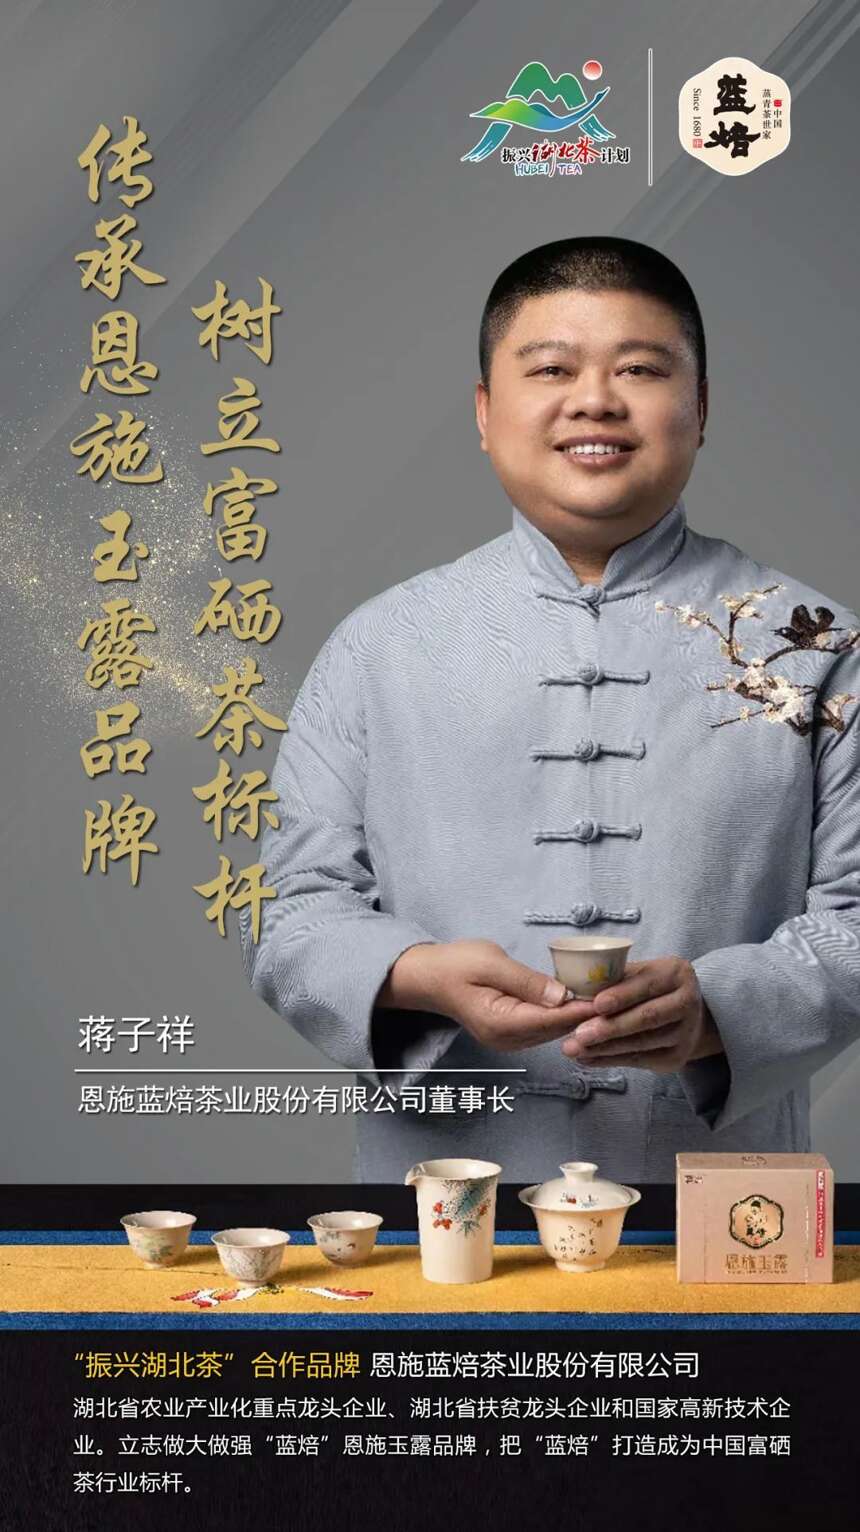 “振兴湖北茶”合作品牌巡礼 |恩施蓝焙茶业股份有限公司